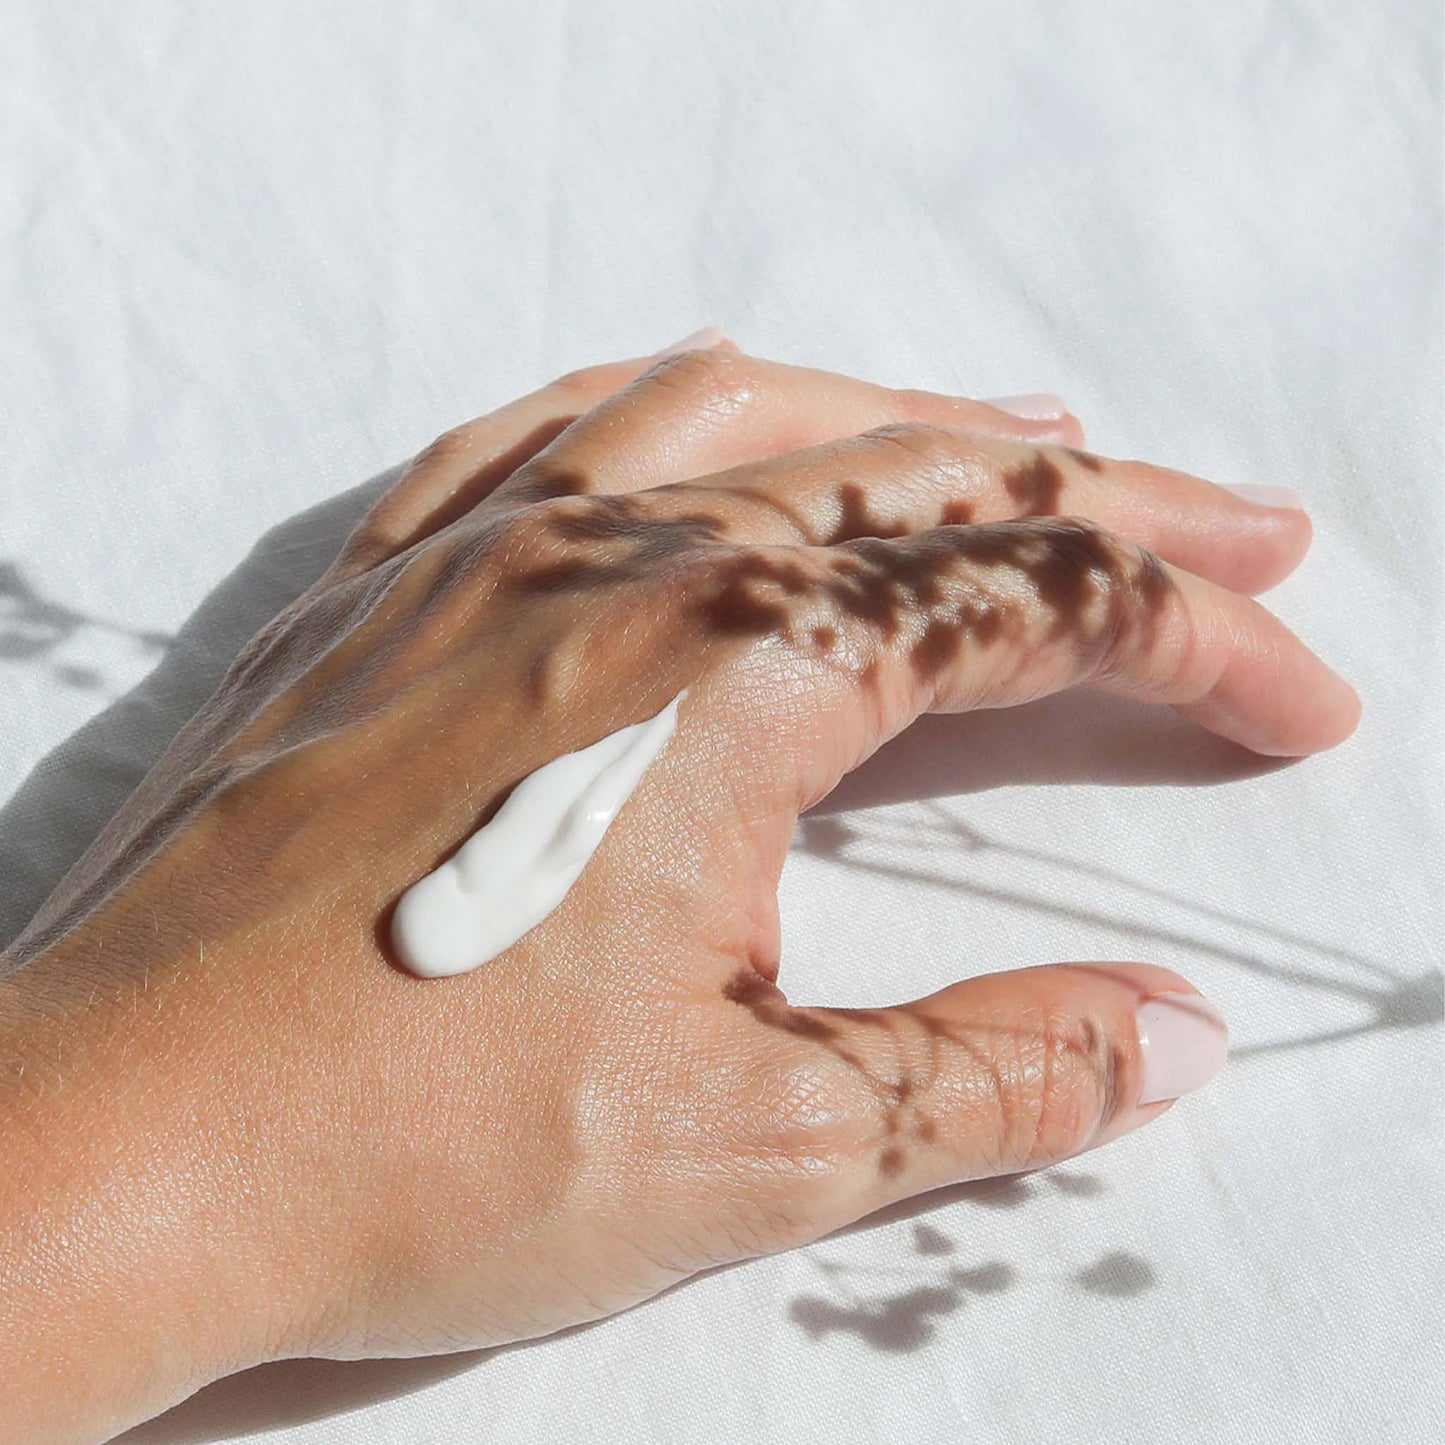 Een klodder Nordic Cosmetics handcrème zit op de hand van een vrouw.